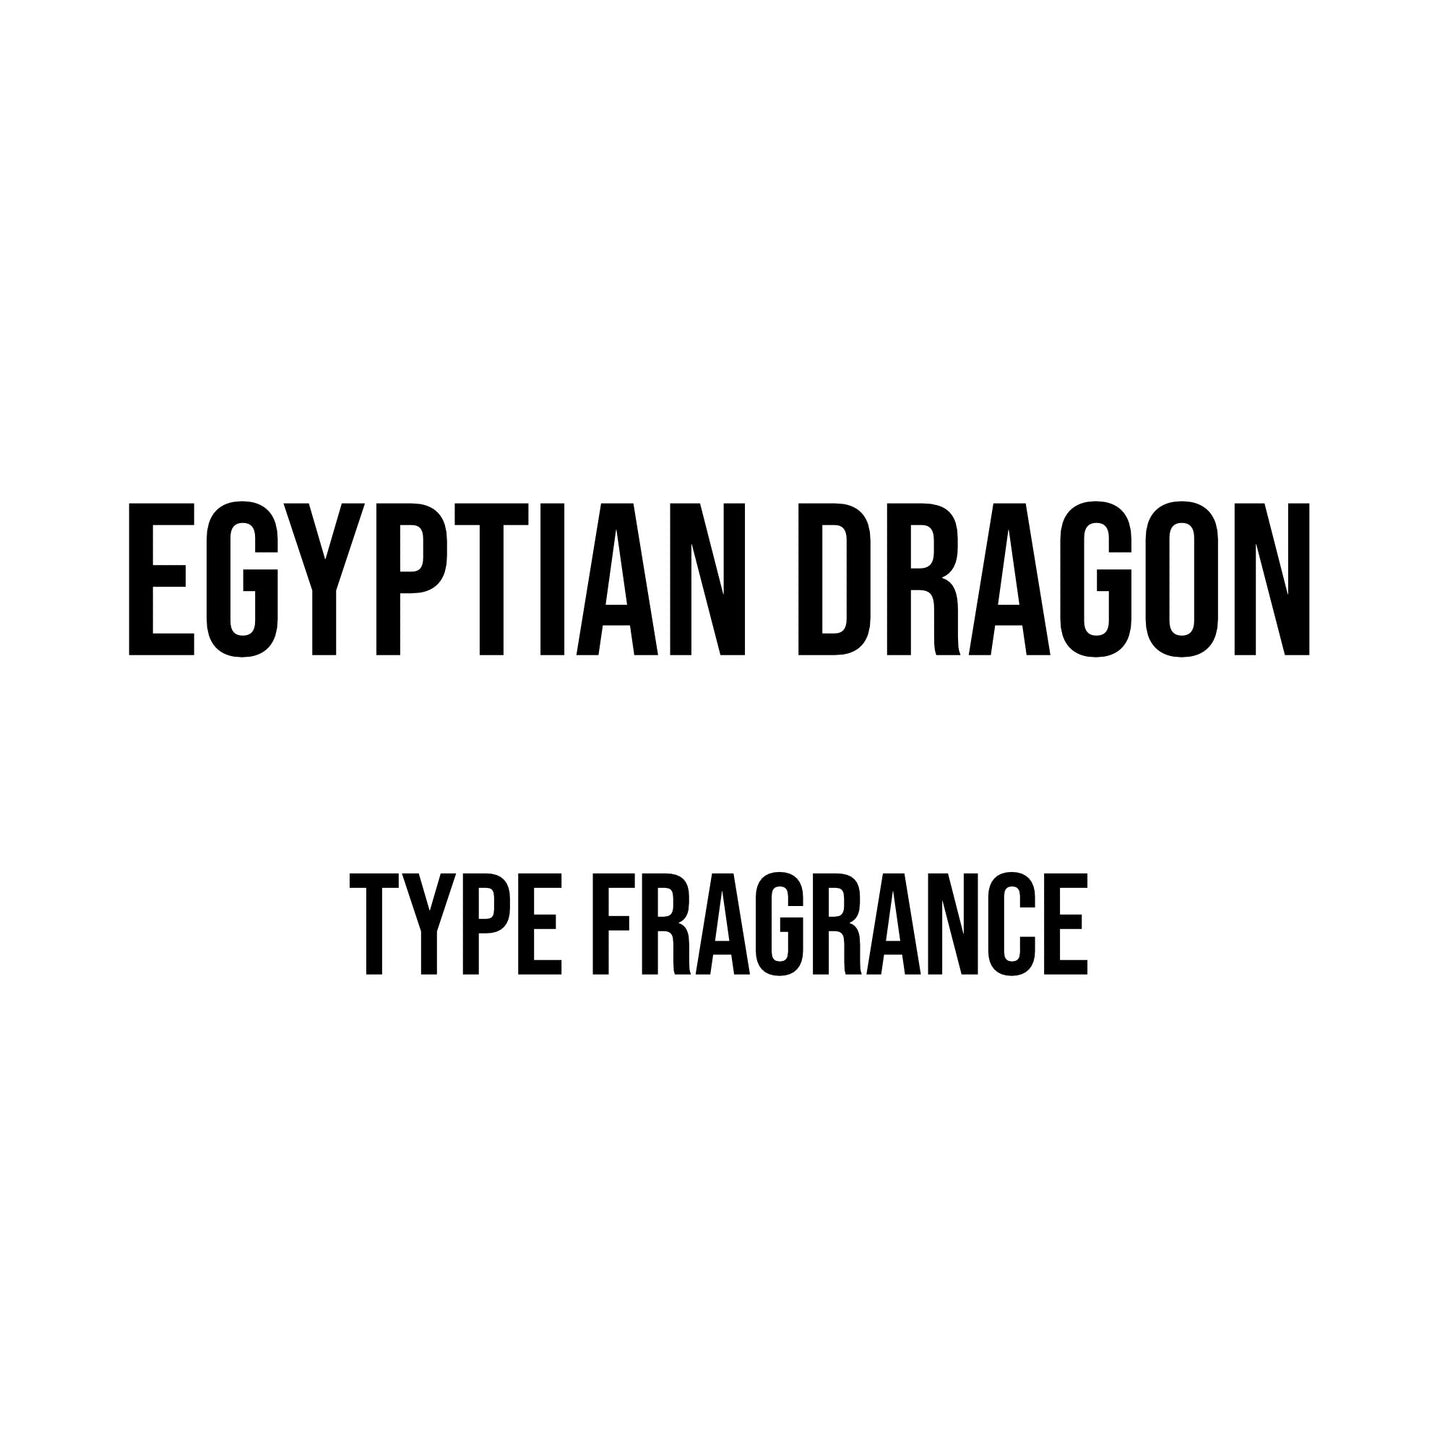 Egyptian Dragon Type Fragrance